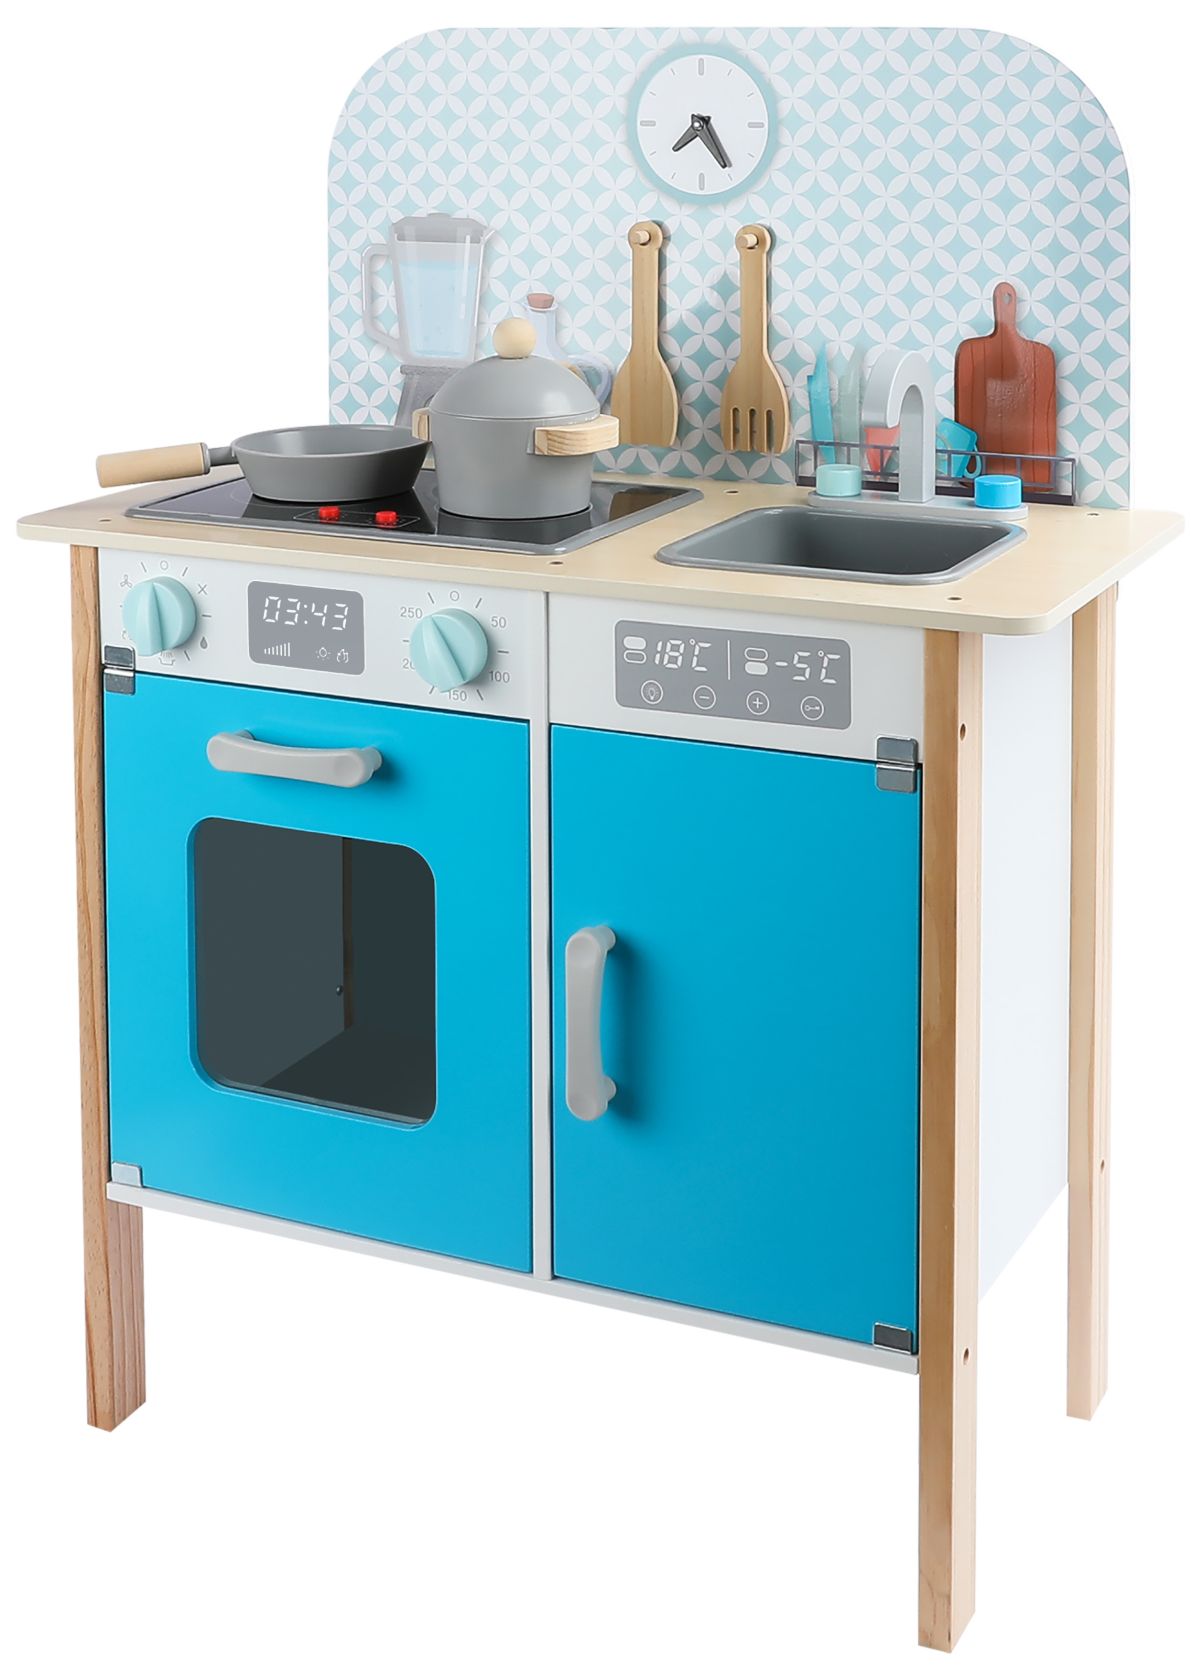 Cucina per bambini in legno con orologio - Menfi colore blu Leomark IT